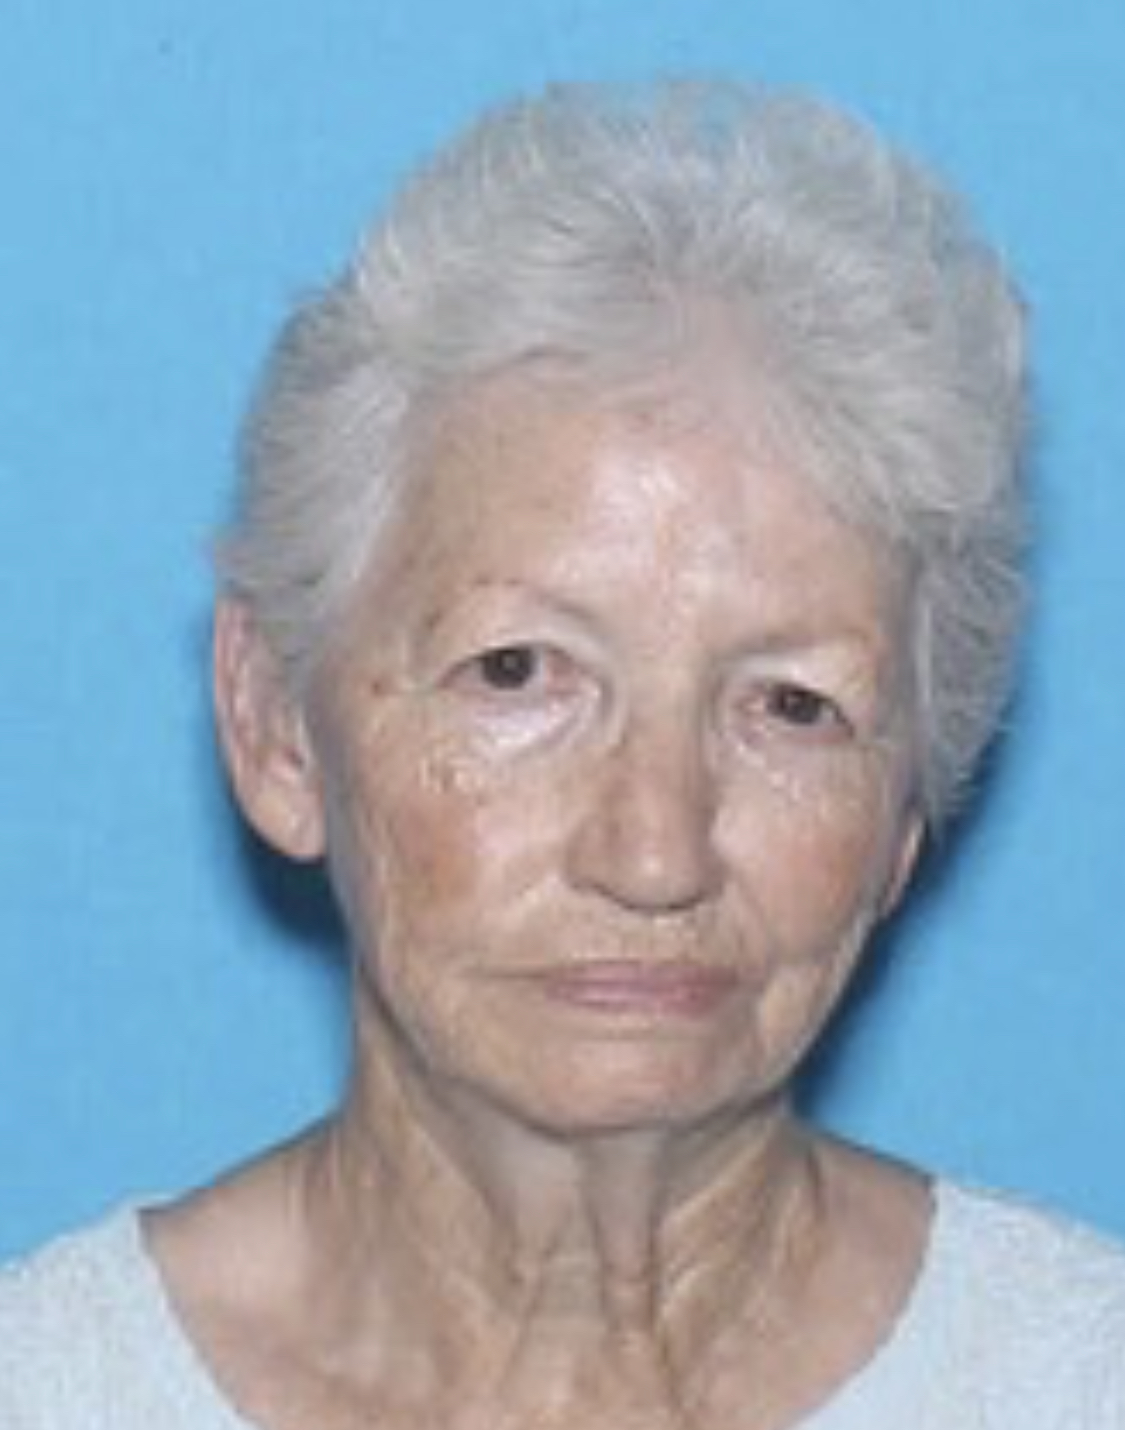 Missing senior alert issued for Flomaton woman